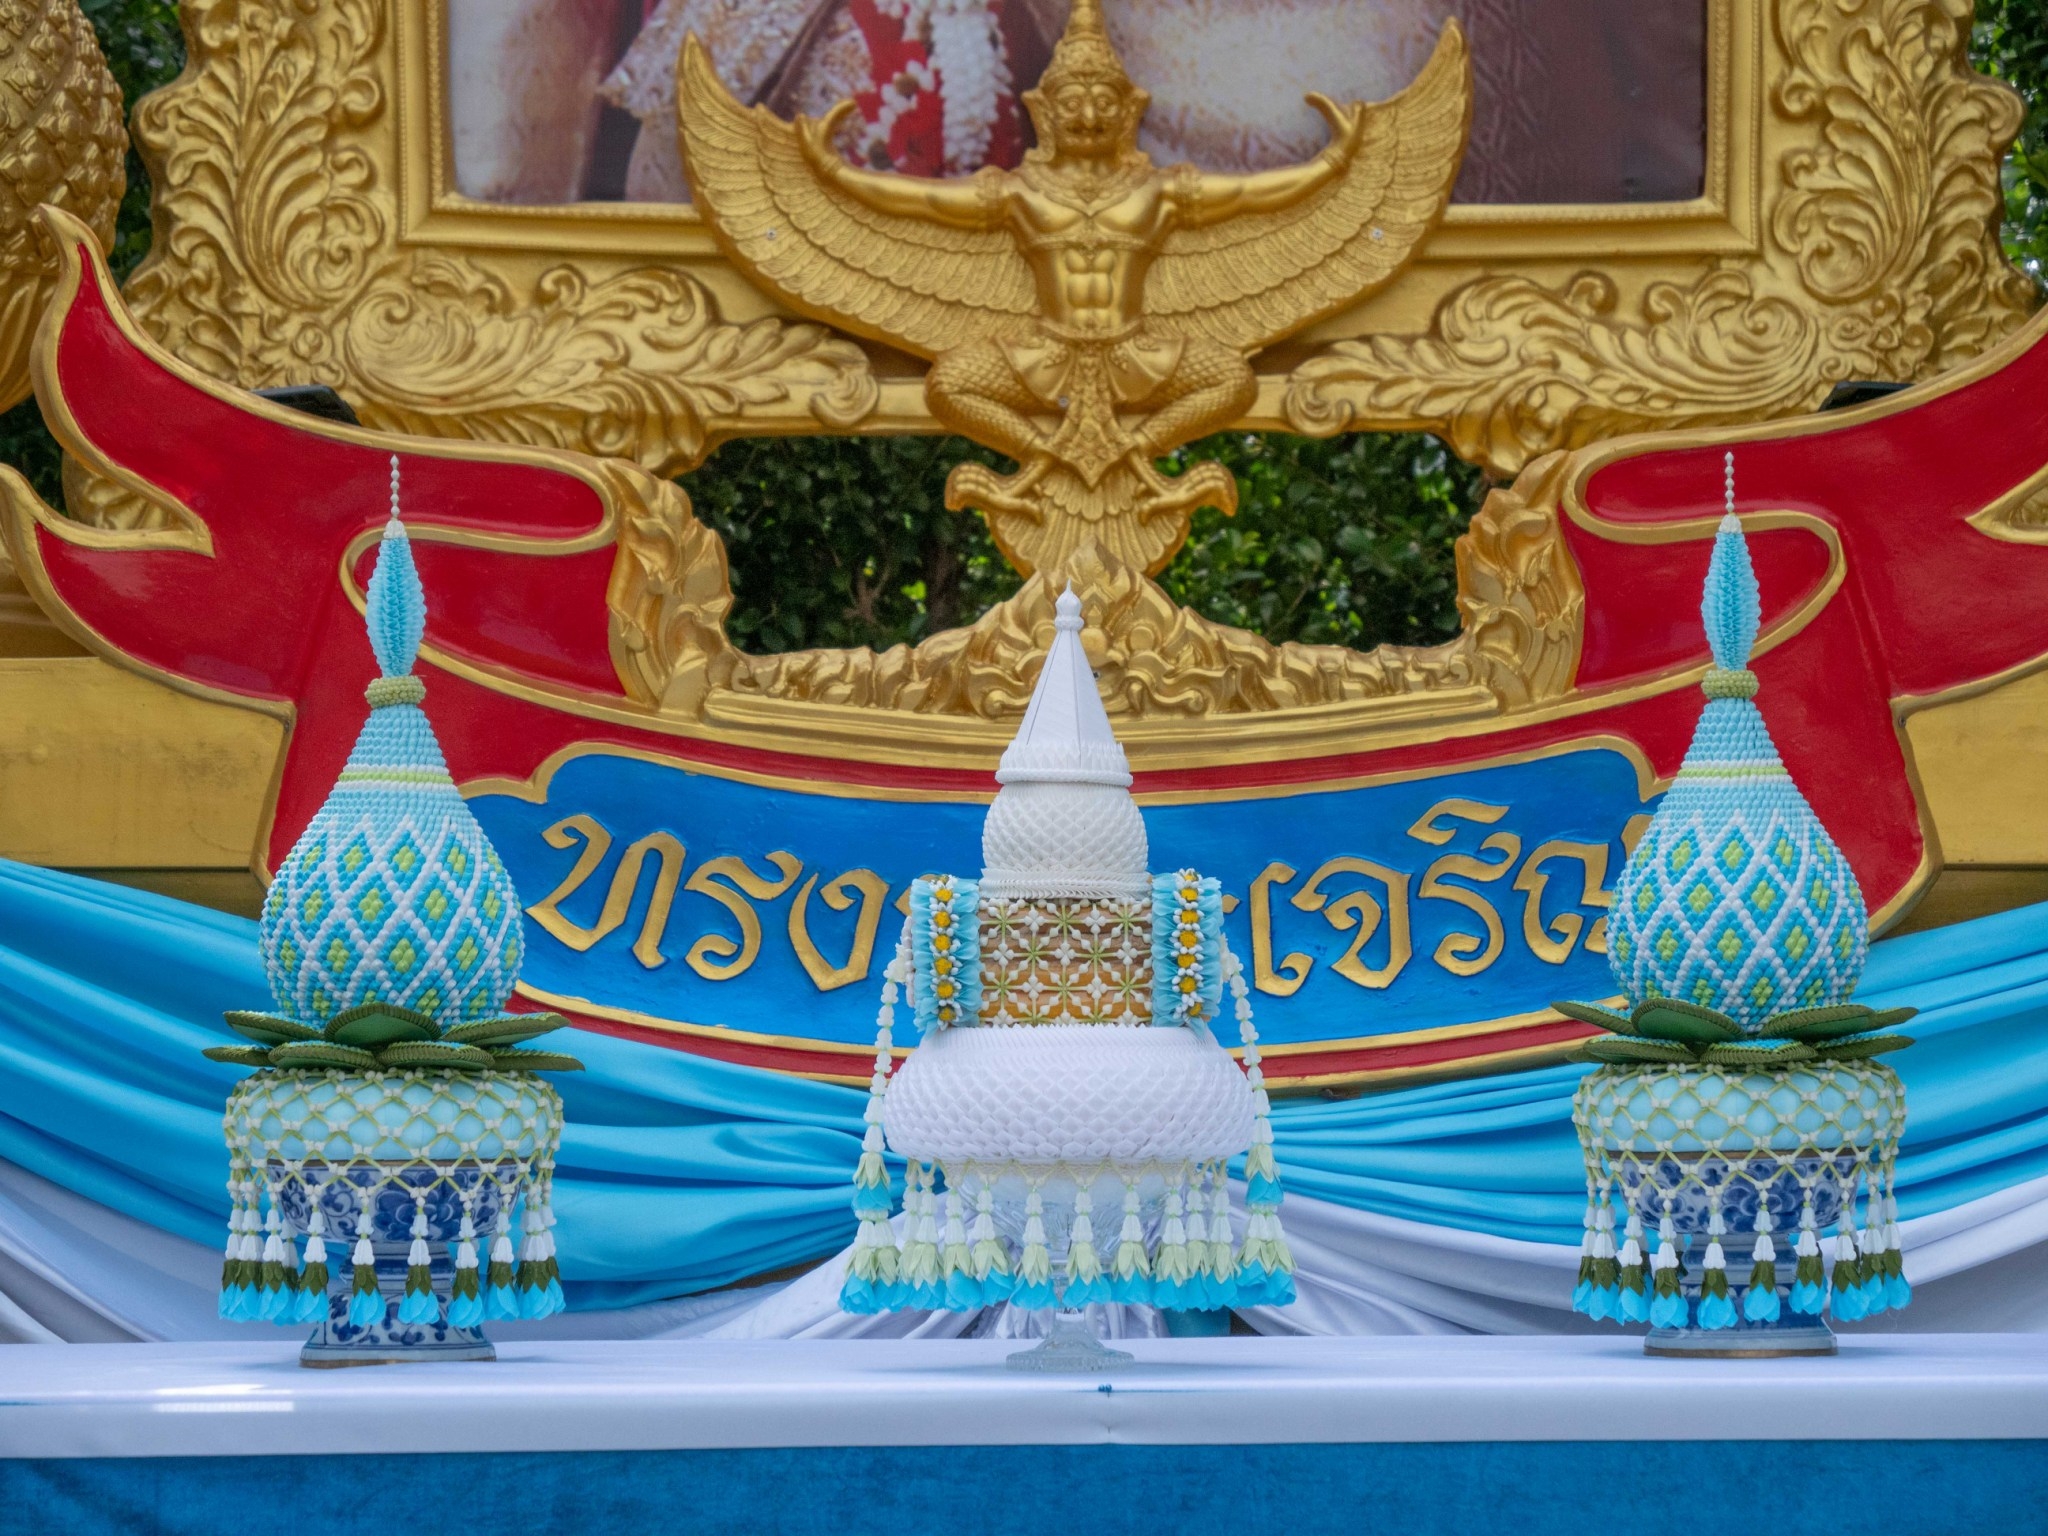 พรรครวมไทยสร้างชาติจัดพิธีถวายเครื่องราชสักการะและวางพานพุ่ม เนื่องในโอกาสวันเฉลิมพระชนมพรรษา สมเด็จพระนางเจ้าสิริกิติ์ พระบรมราชินีนาถ พระบรมราชชนนีพันปีหลวง